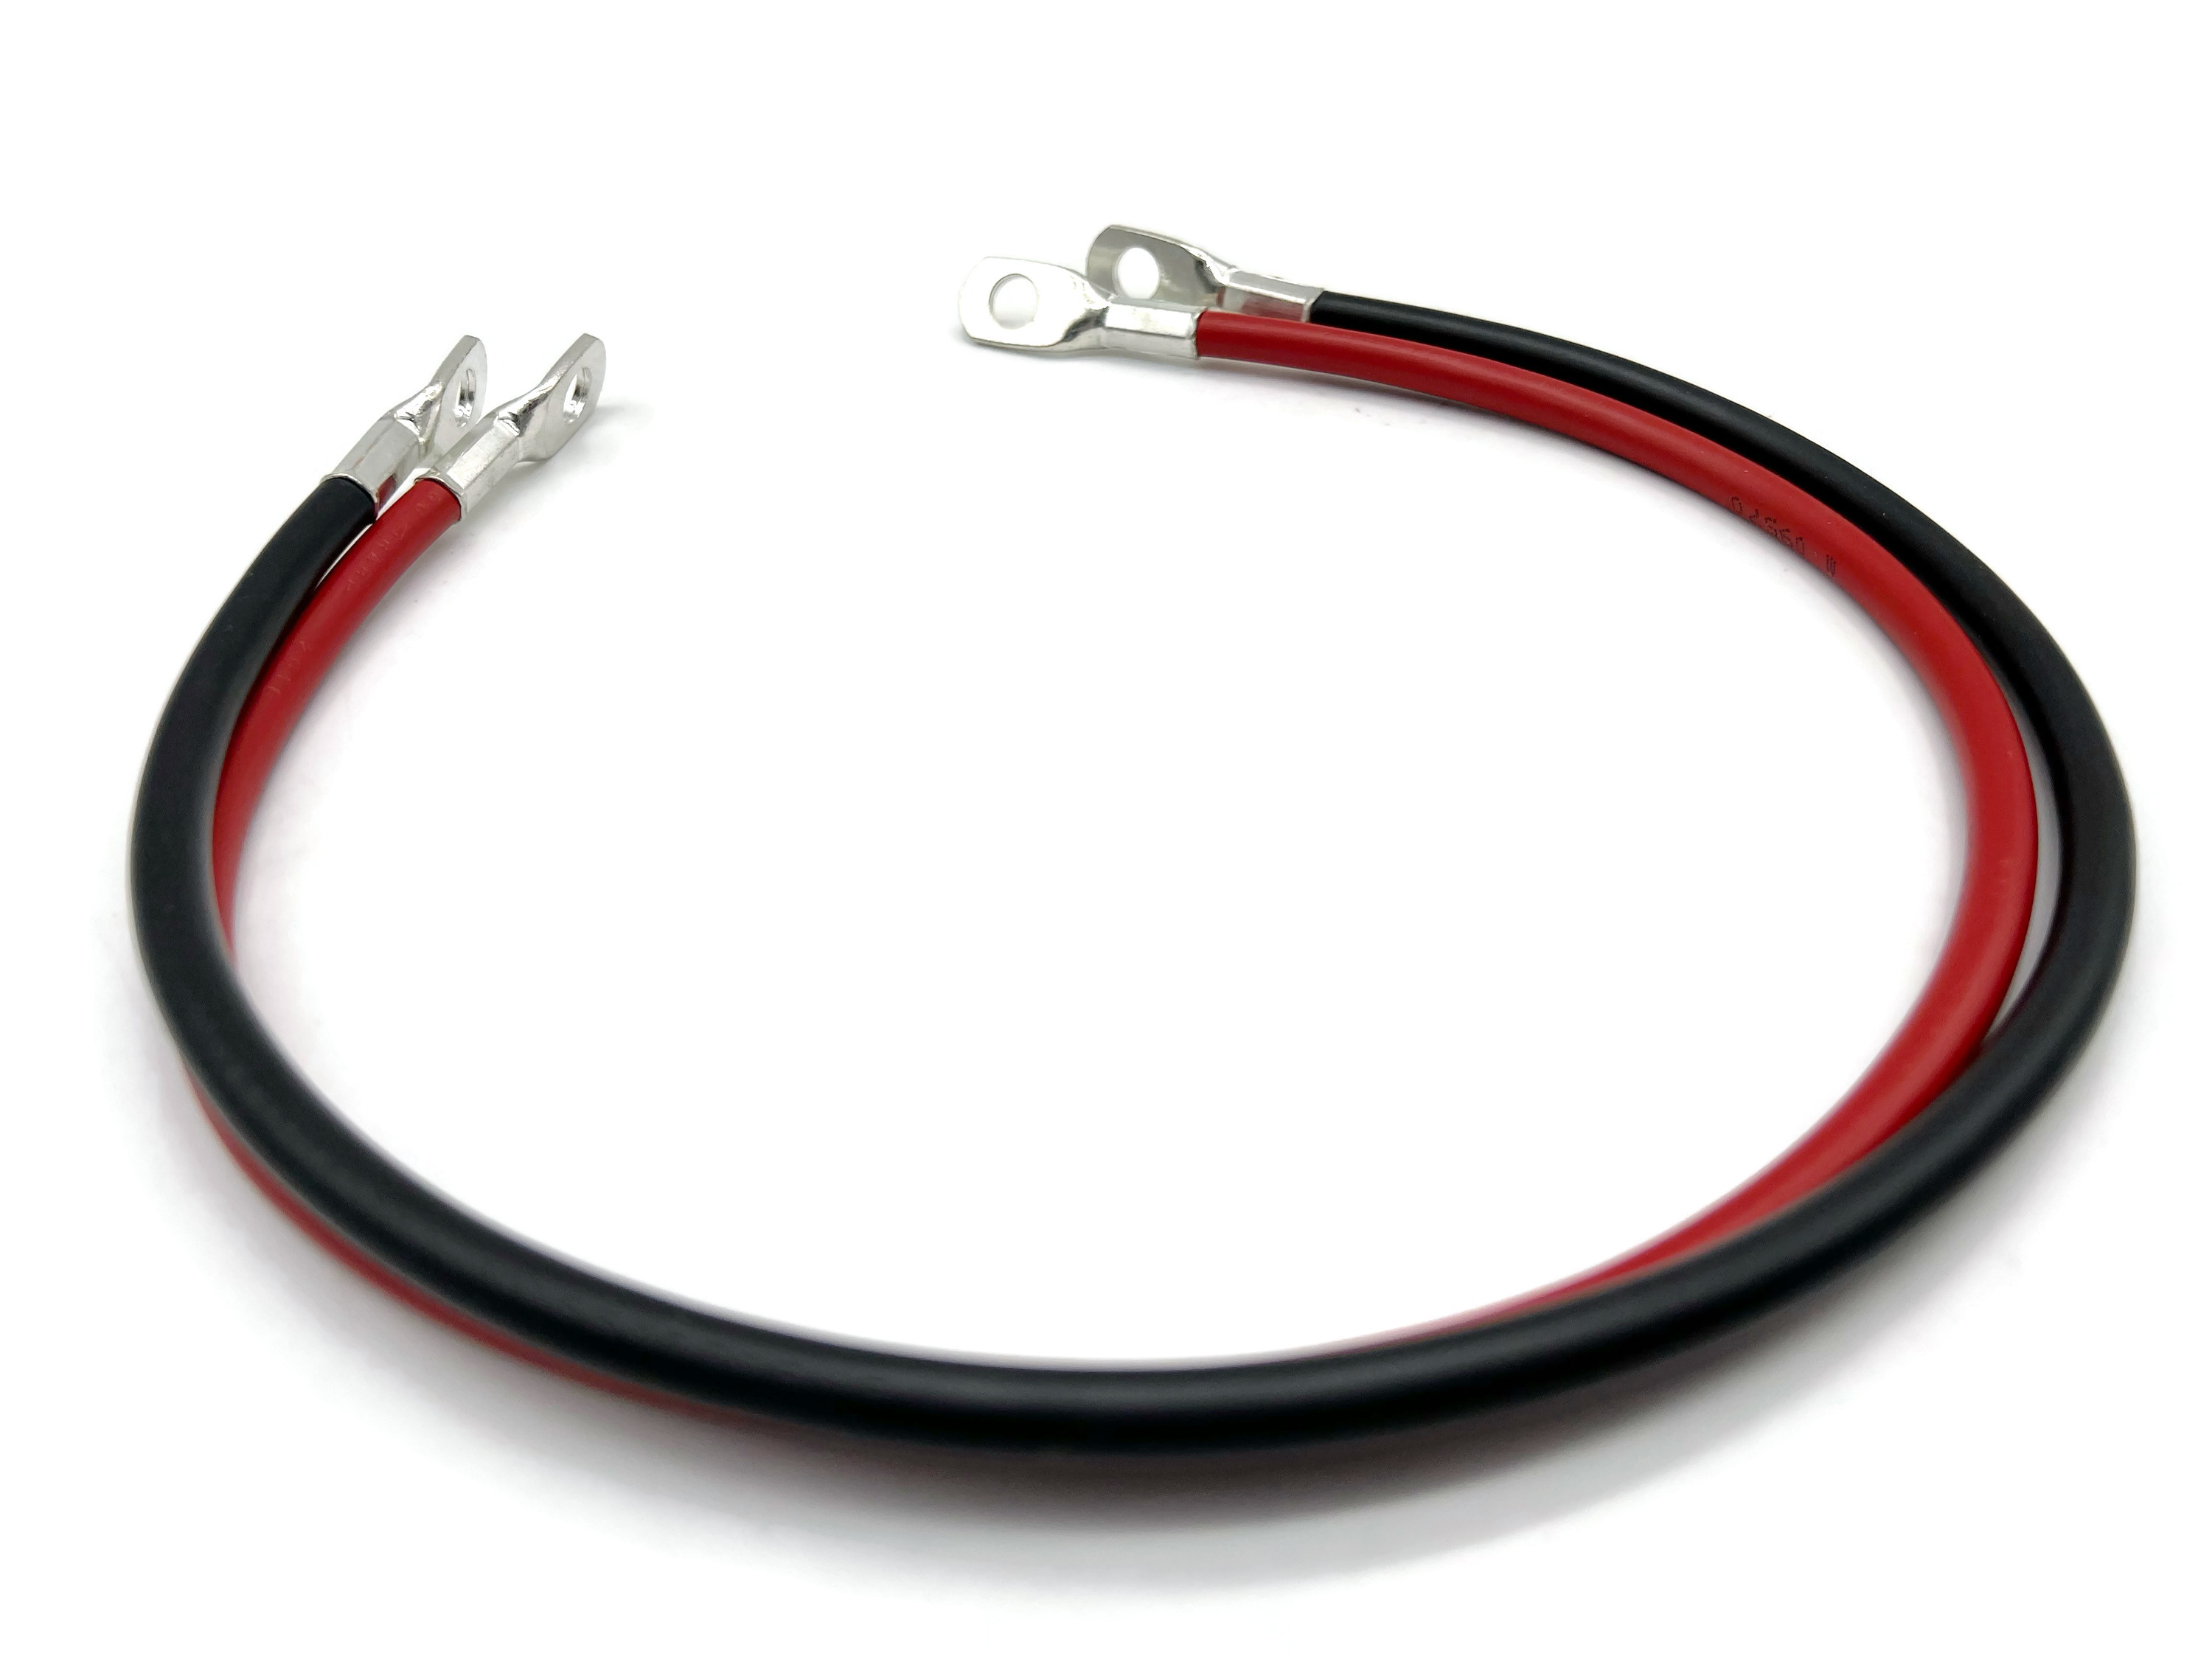 revolt Fahrzeug-Batterie-Kabel: 2er-Set Batteriekabel, je 100 cm, 16 mm²,  rot/schwarz (Batterie-Anschlusskabel)